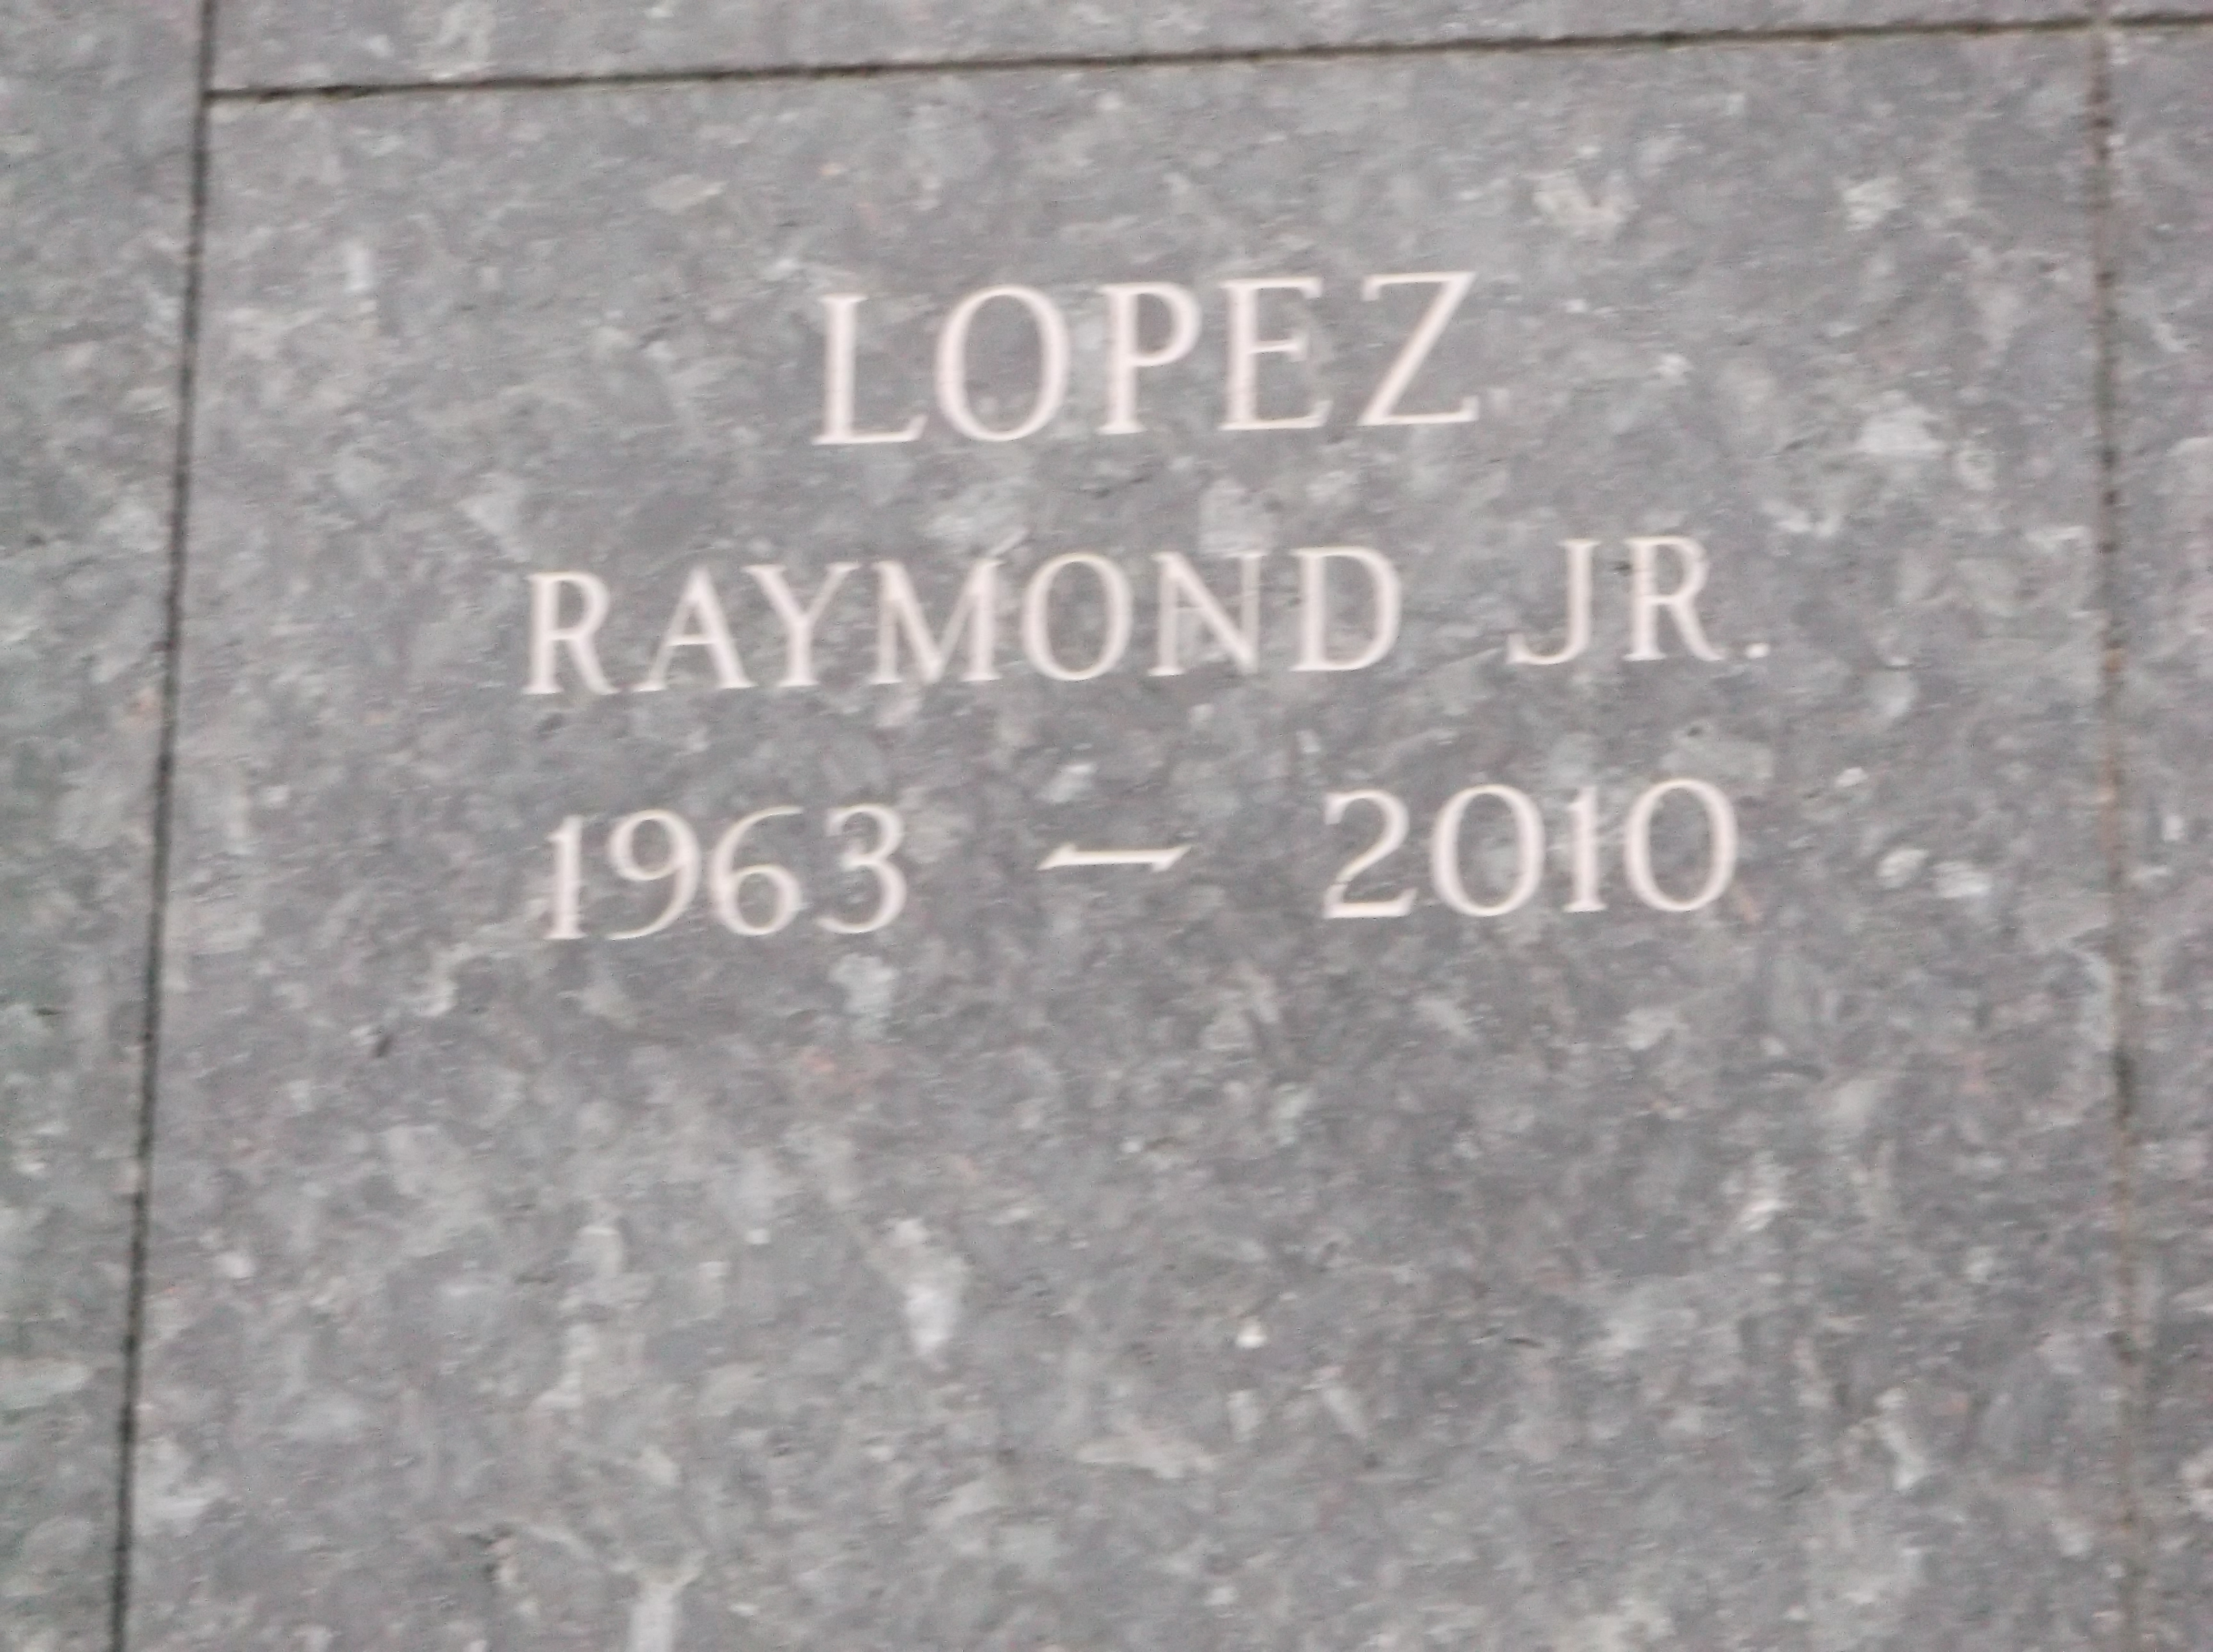 Raymond Lopez, Jr